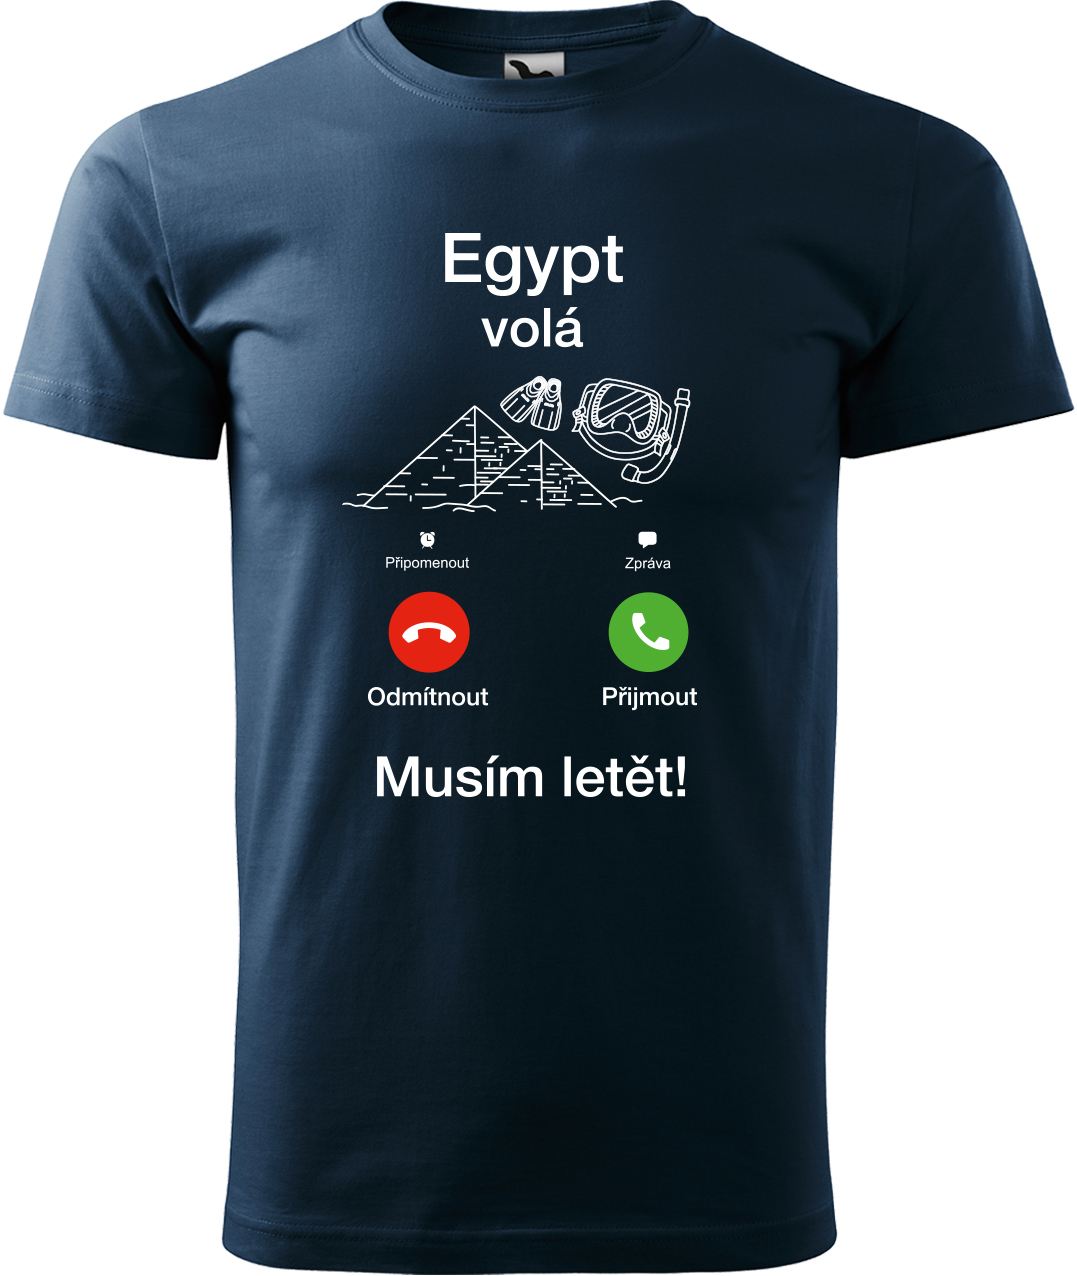 Pánské cestovatelské tričko - Egypt volá - musím letět! Velikost: L, Barva: Námořní modrá (02), Střih: pánský